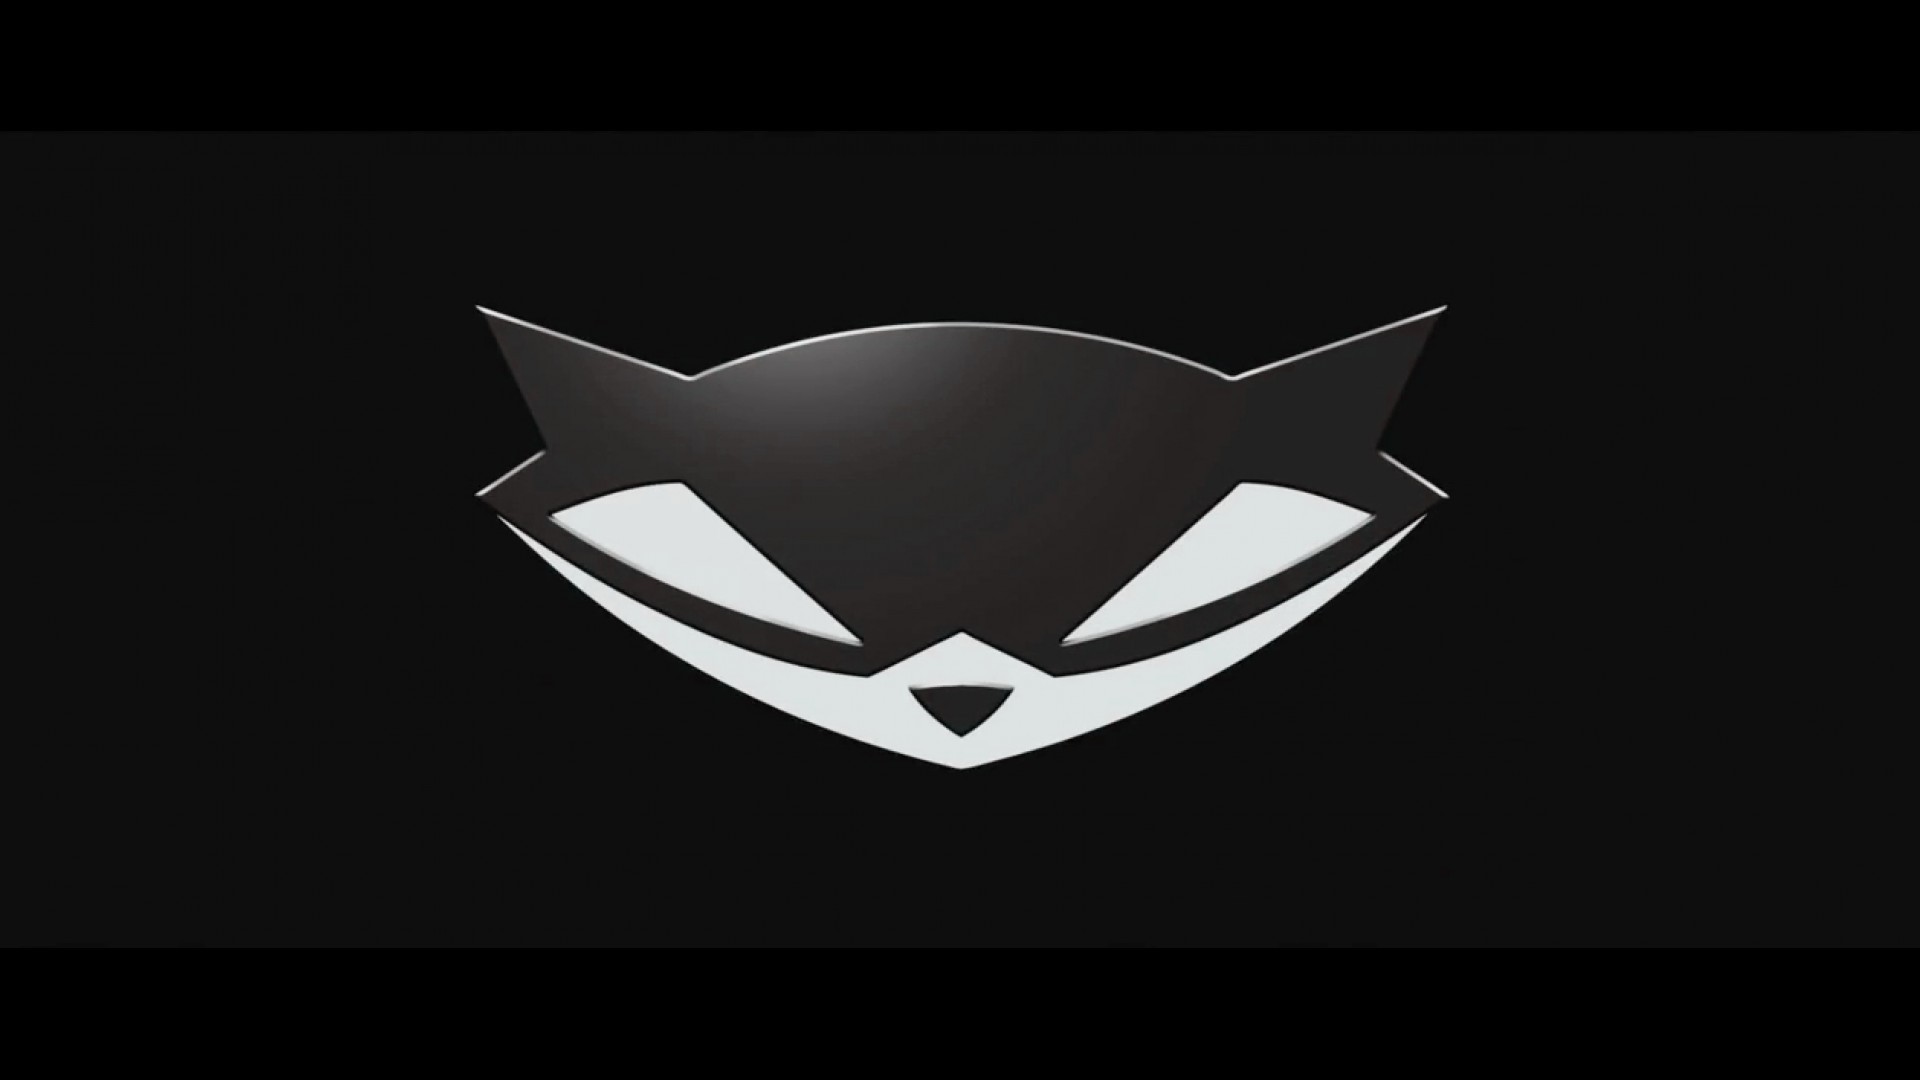 sly cooper wallpaper,logo,batman,fictional character,emblem,symbol